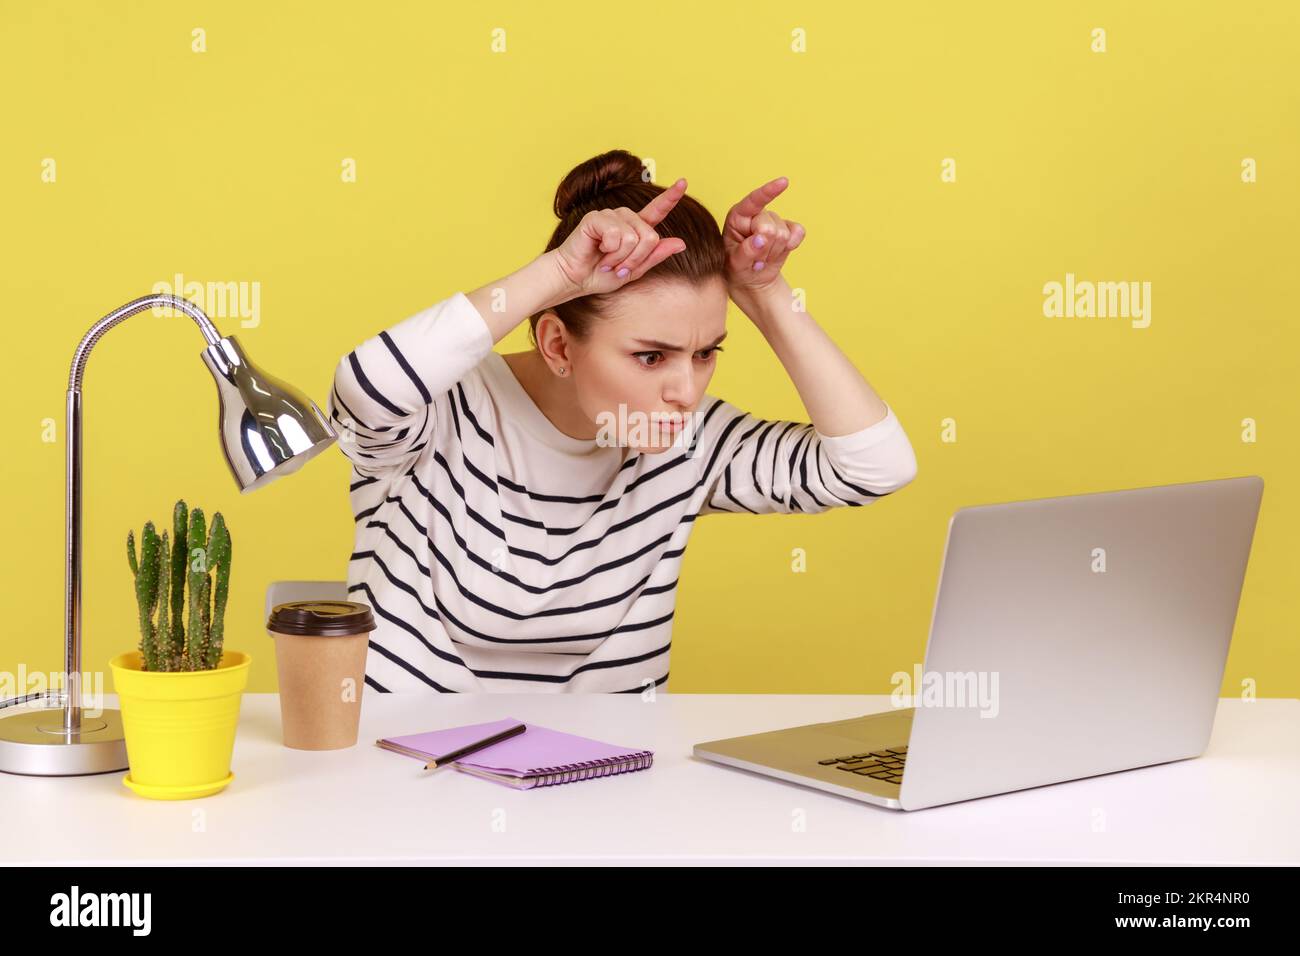 Eine wütende, herrisch besetzte Sekretärin, die Finger über dem Kopf hält und Bullenhörner am Arbeitsplatz zeigt, die drohen, wütend auf den Laptop-Bildschirm zu schauen. Studioaufnahmen im Innenbereich isoliert auf gelbem Hintergrund. Stockfoto